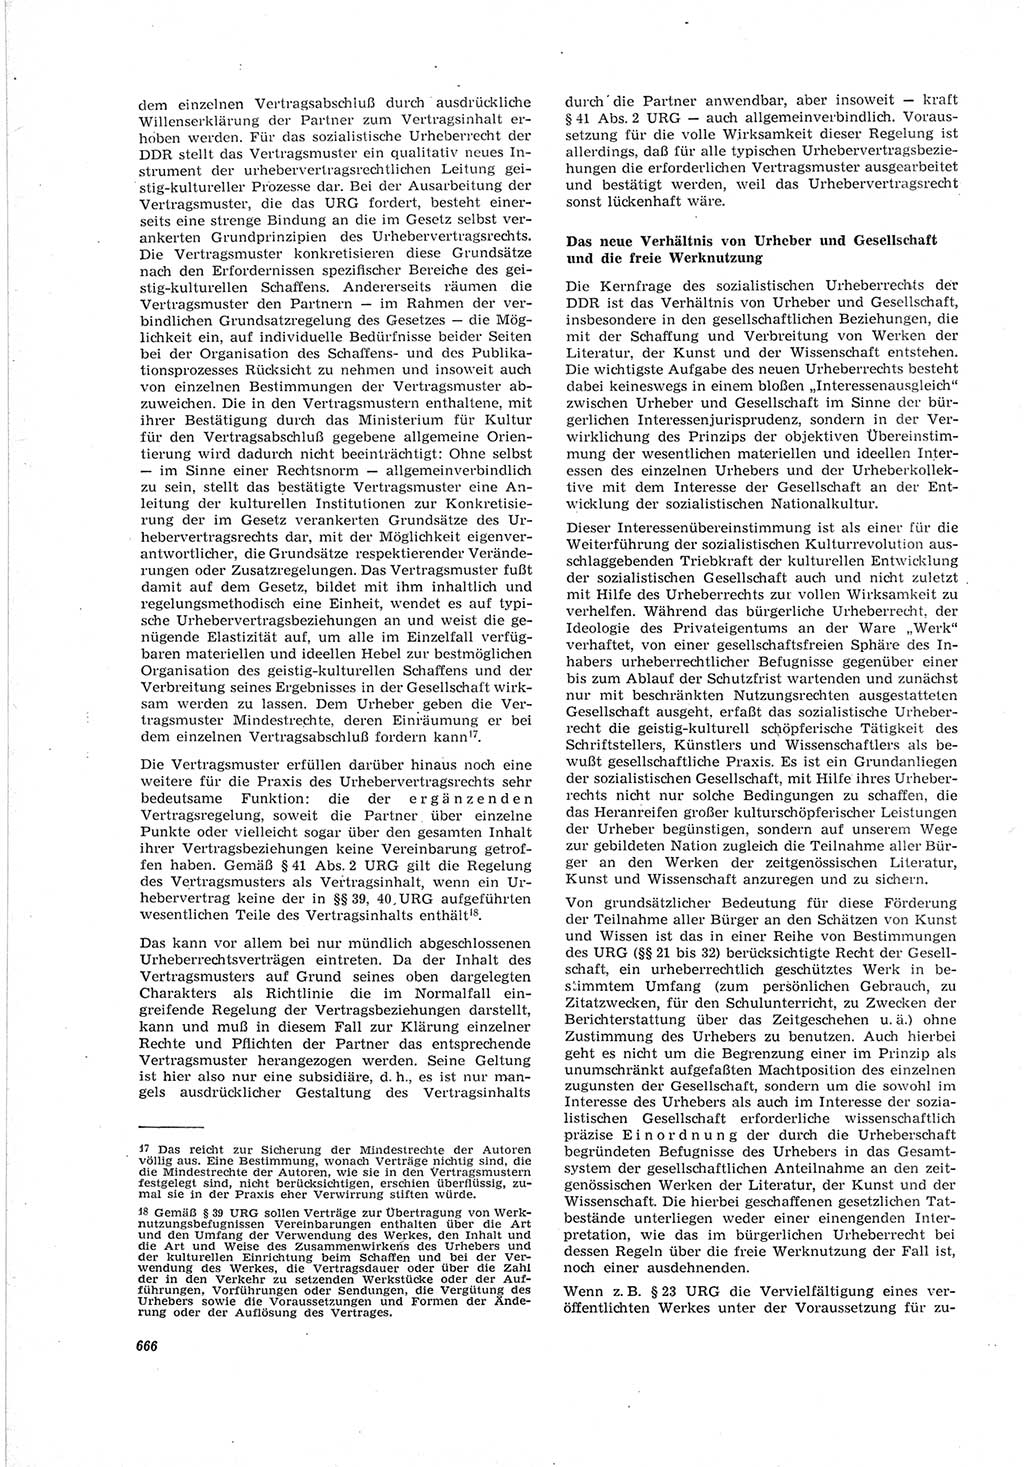 Neue Justiz (NJ), Zeitschrift für Recht und Rechtswissenschaft [Deutsche Demokratische Republik (DDR)], 19. Jahrgang 1965, Seite 666 (NJ DDR 1965, S. 666)